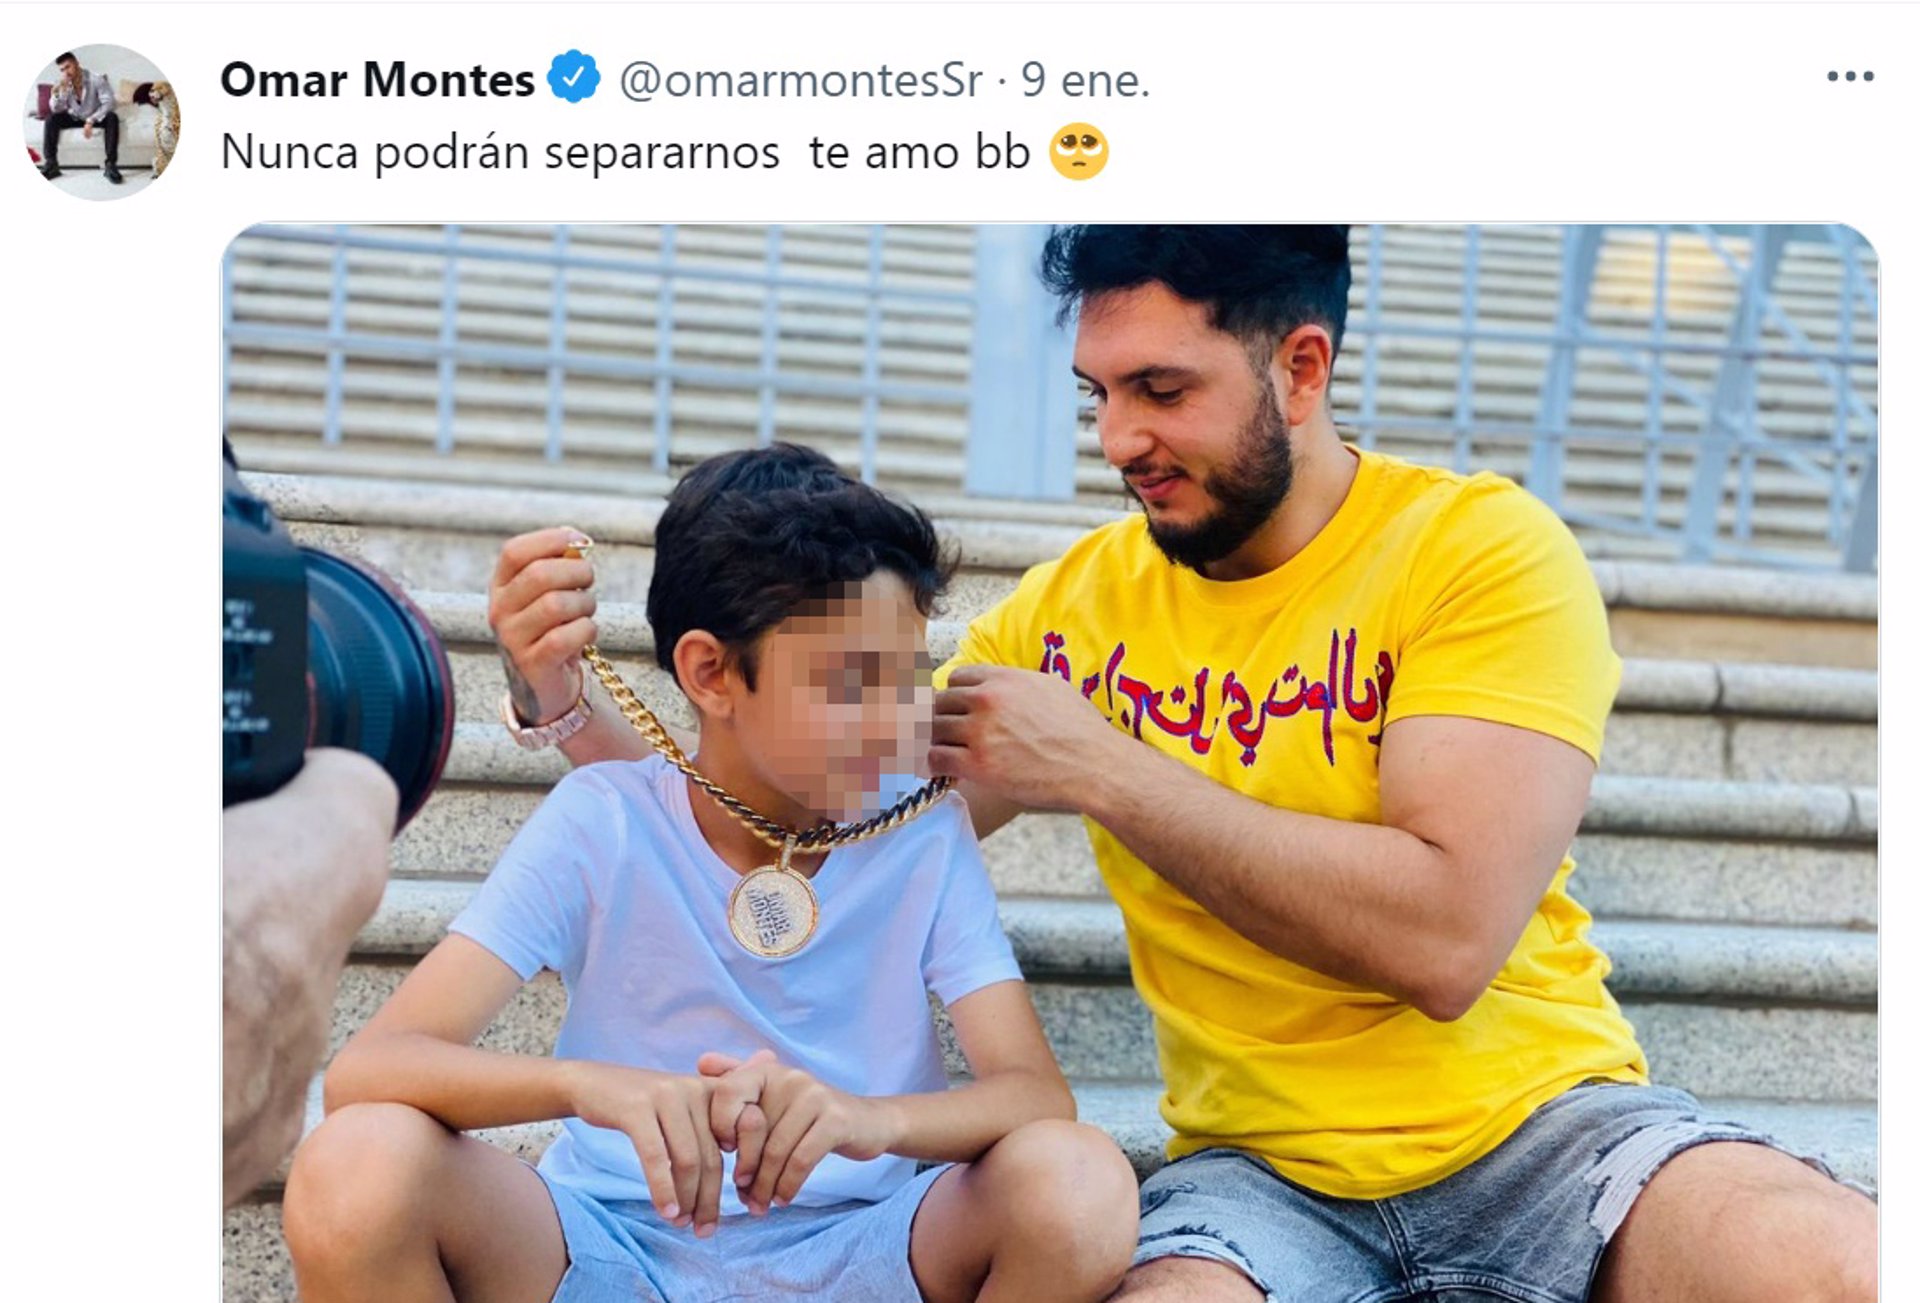 Omar Montes ha publicado en Twitter una fotografía dejando claro que nadie le separará de su hijo